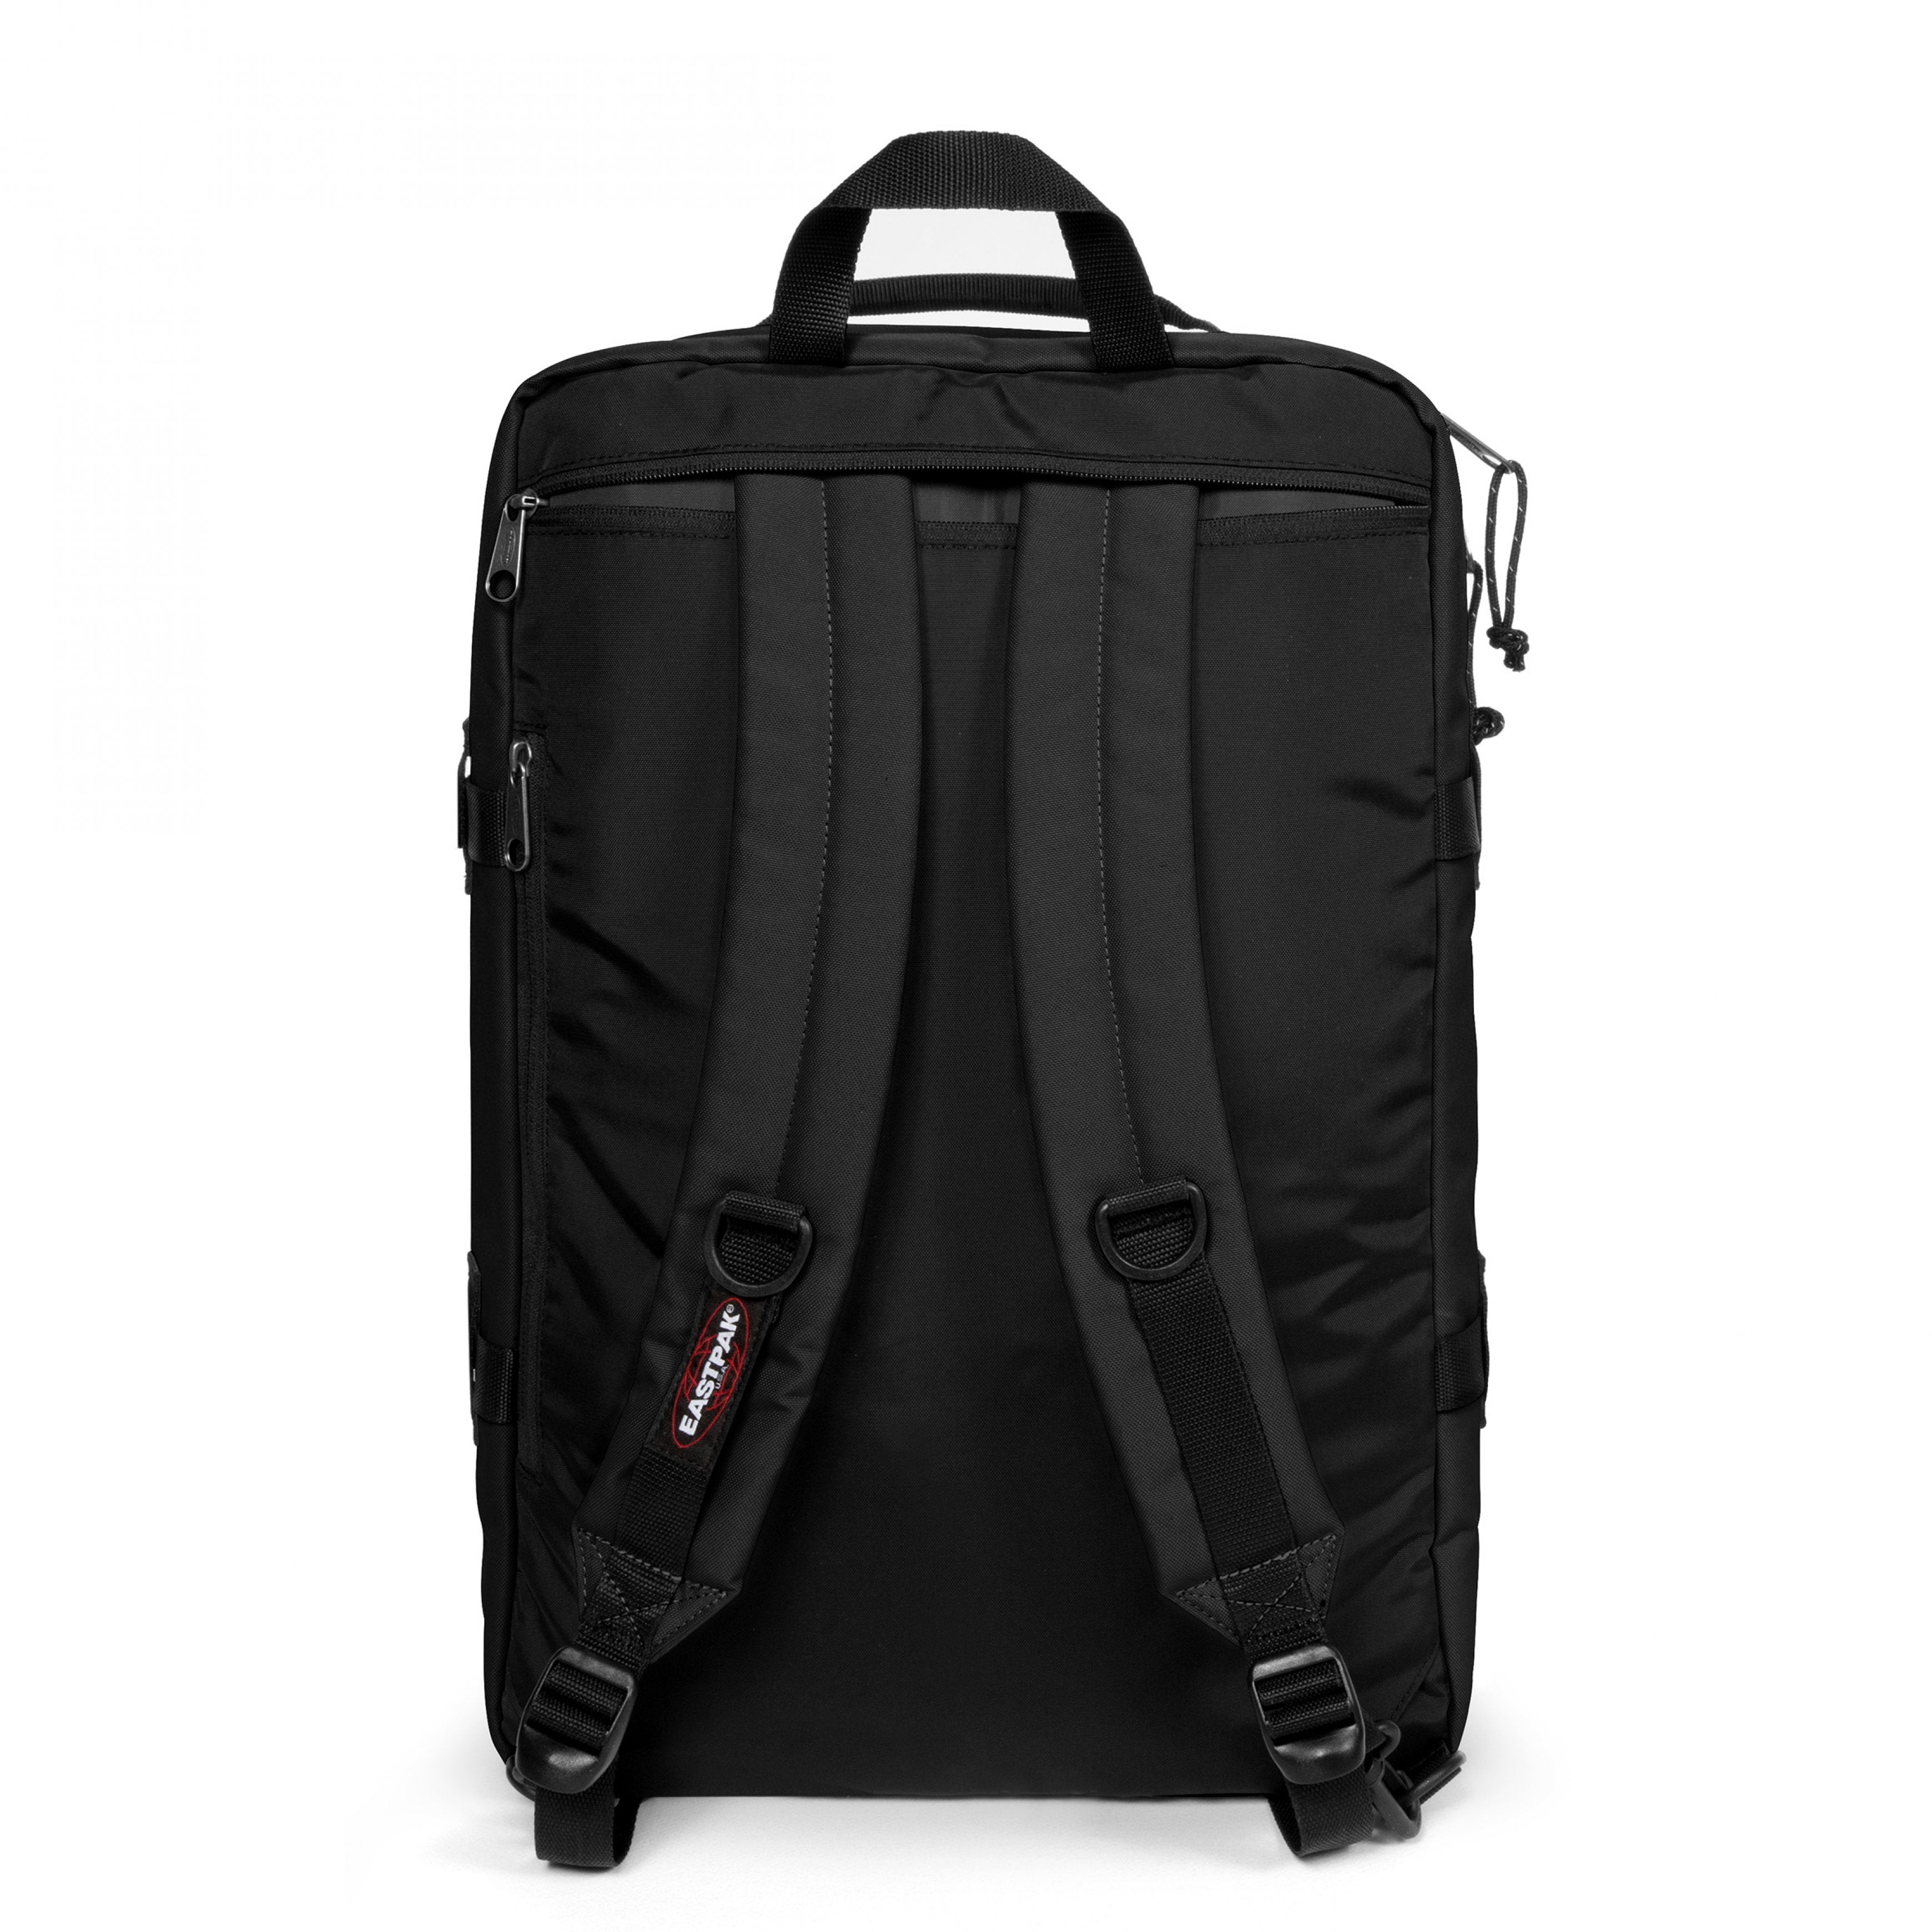 Eastpak-Travelpack-Large Backpack With Laptop Sleeve-Black-Ek0A5Bbr0081